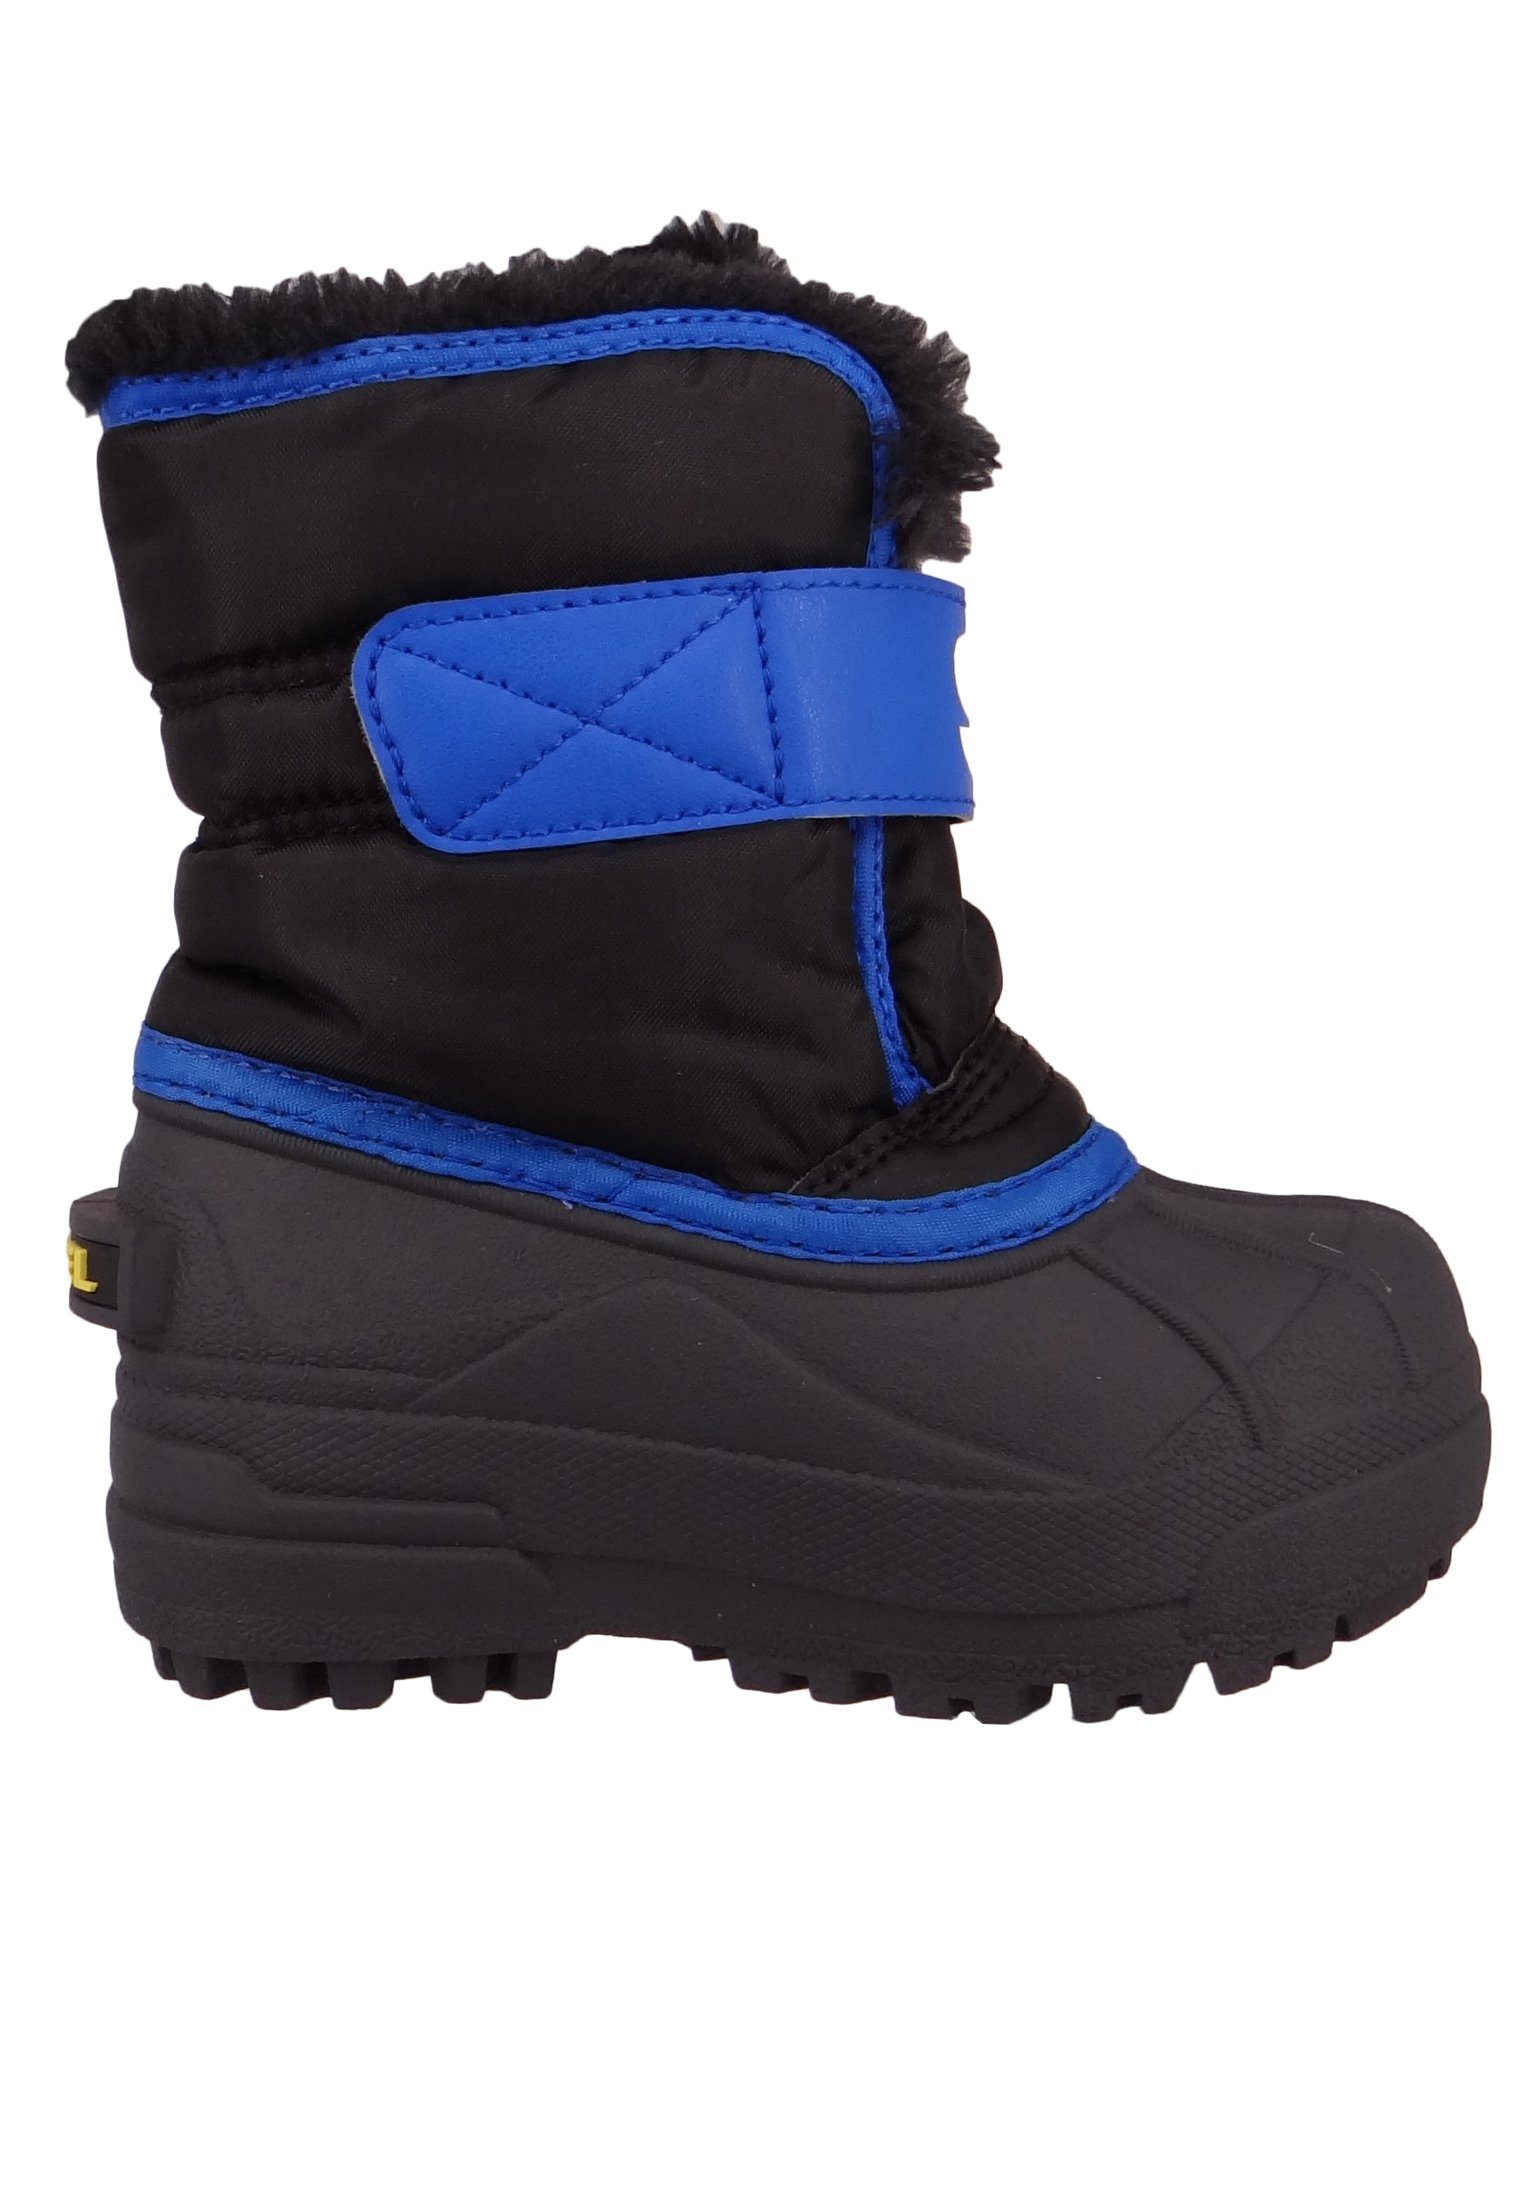 Snowboots Sorel Blue Black 011 Super 1869561